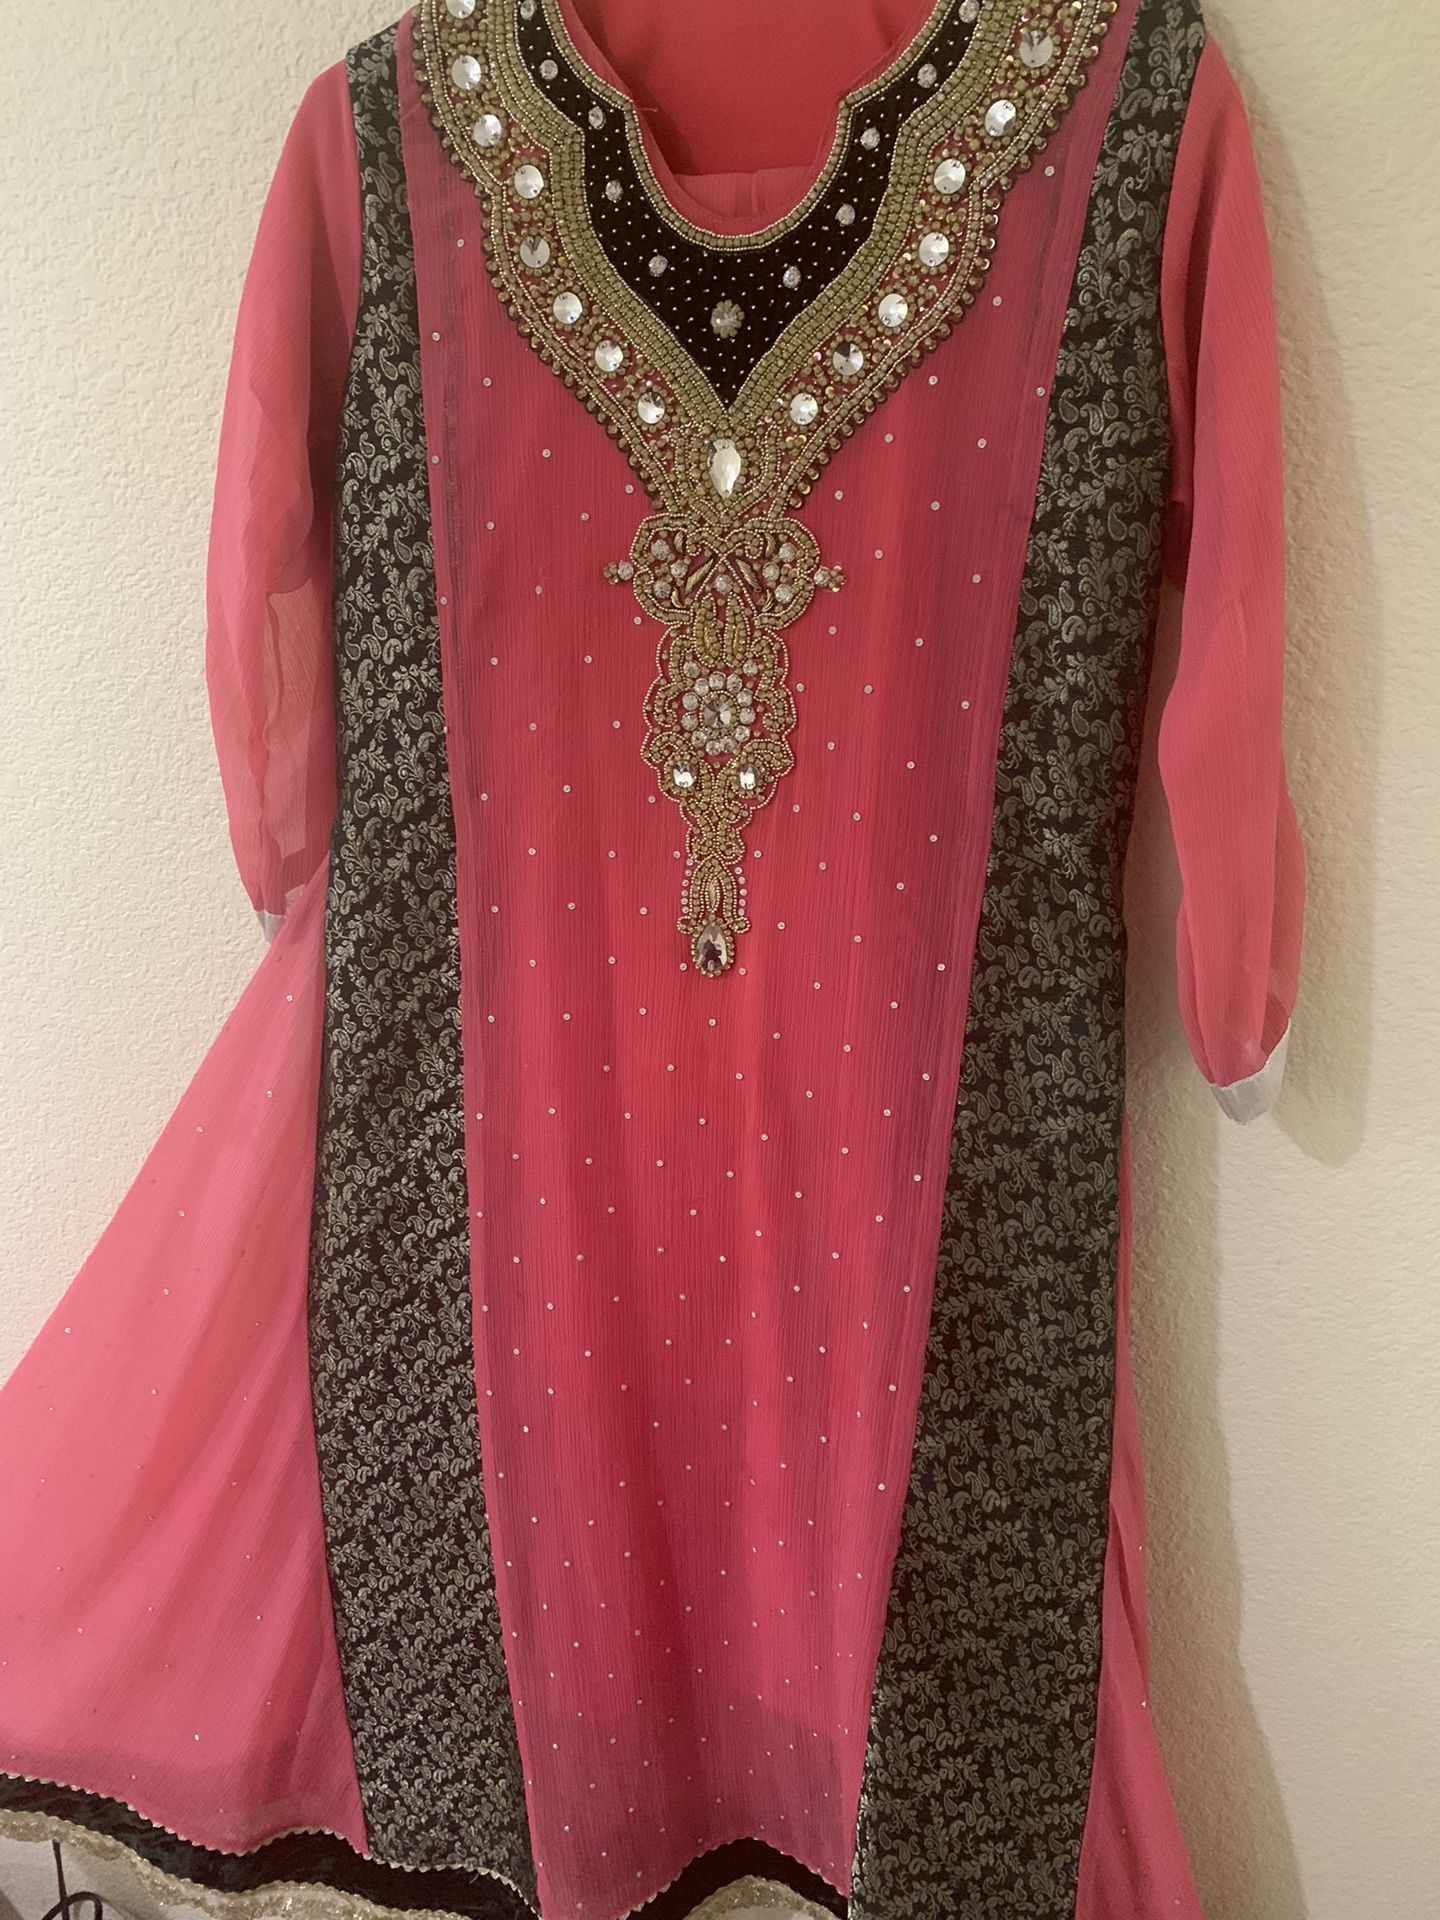 Beautiful Pink Dress Indian/pakistani